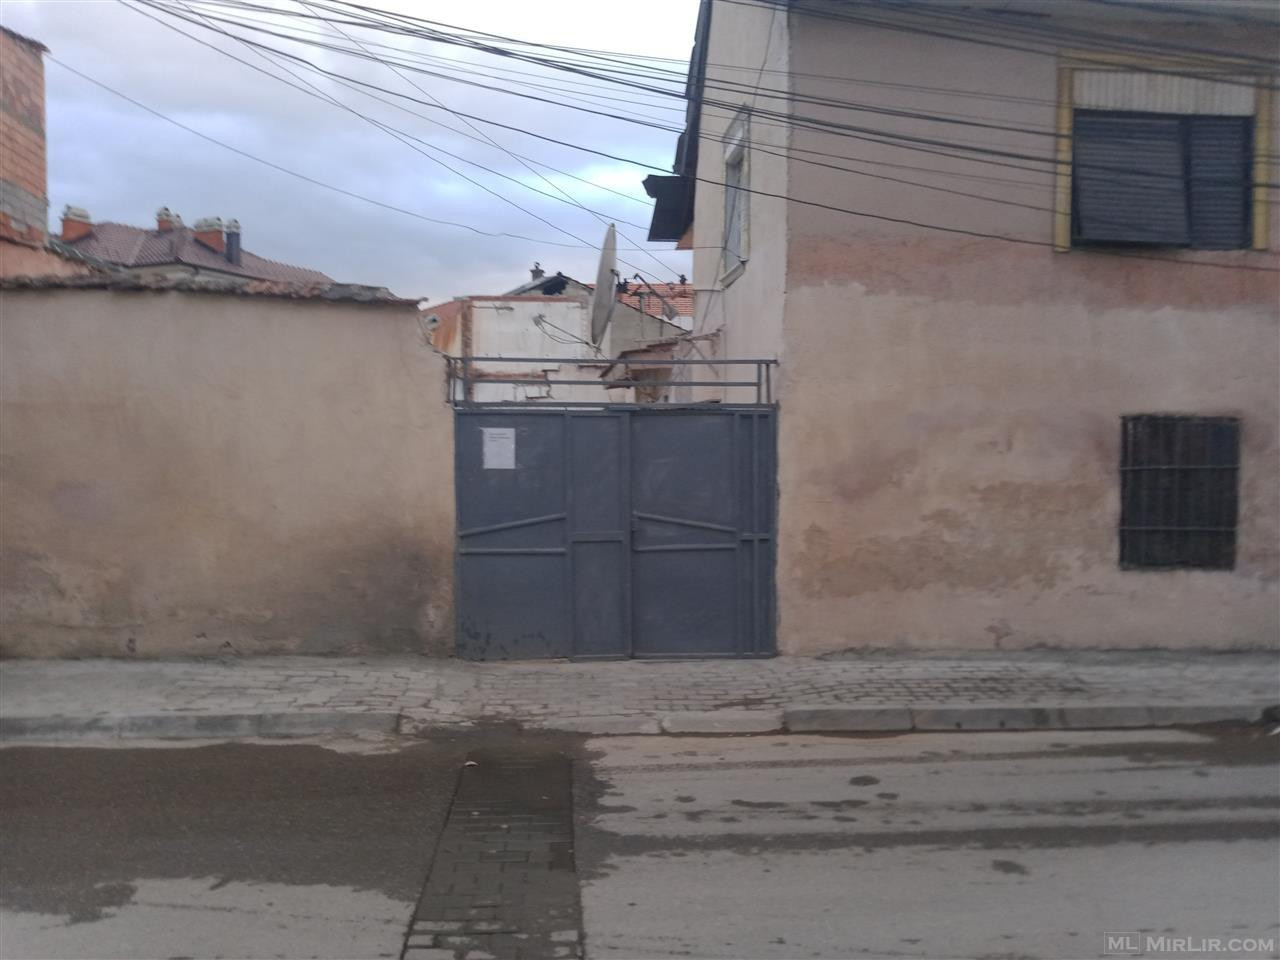 Shitet shtepia ne Prizren